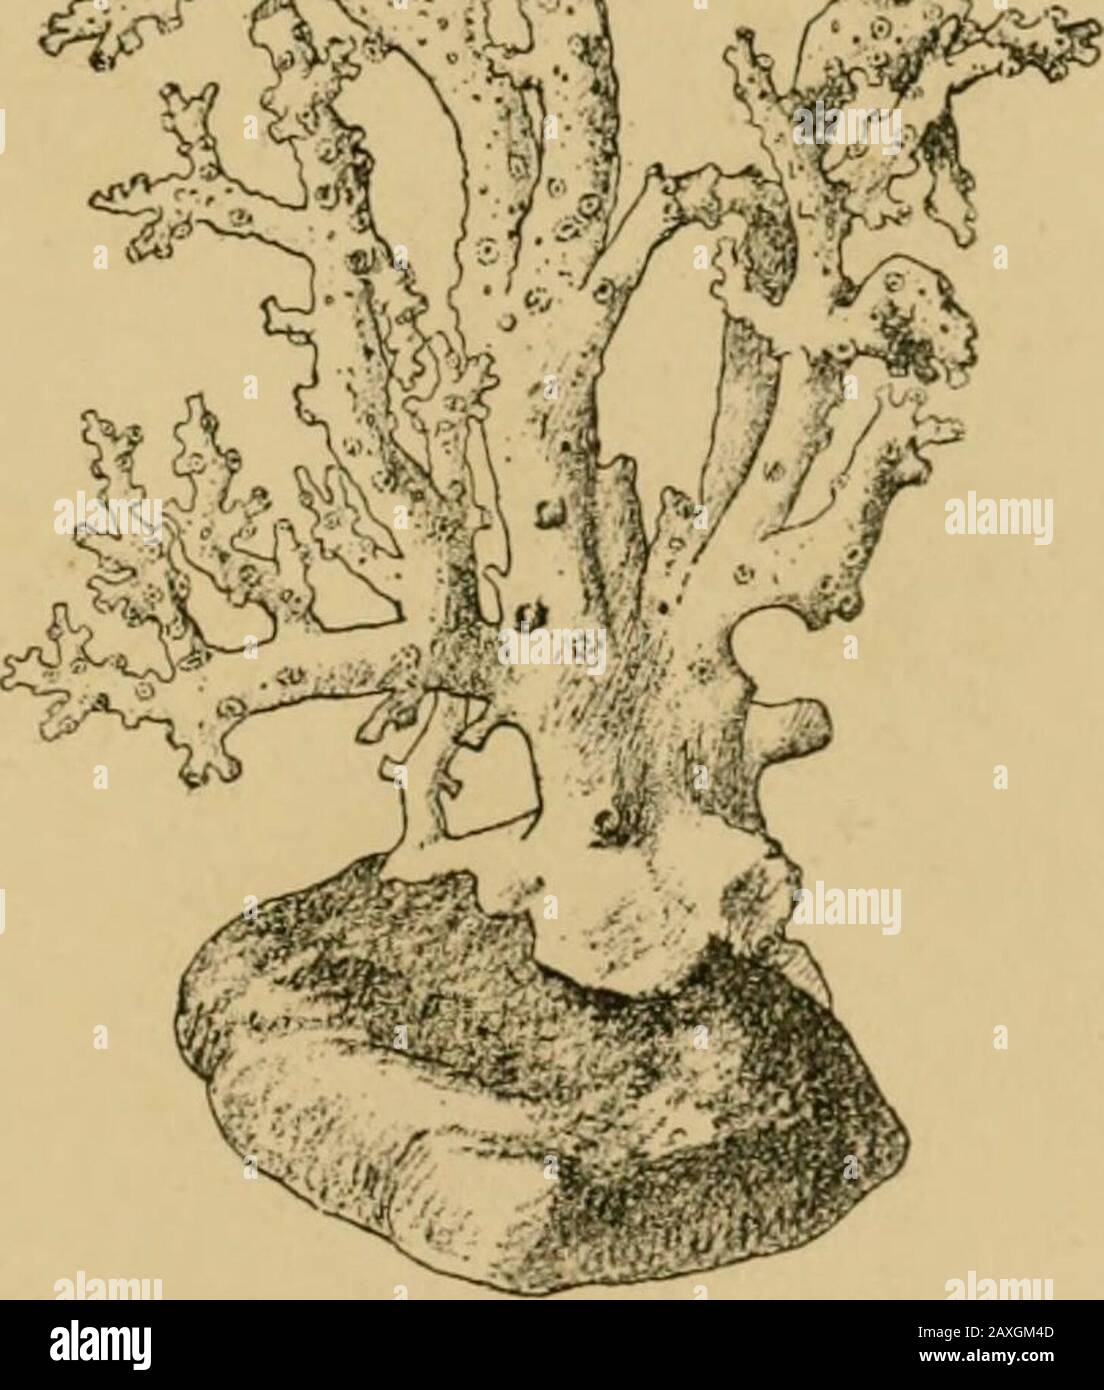 Die Porifera und die Koelentena . ? 1 Wr^. Abb. 43". Skelette von Allopora (upjier links hanil), Errina (unten links liatid), andStylaster (rechts), große komplexe Nematocysten, die aus den üblichen Körperschichten bestehen und an ihren Basen mit den röhrenförmigen Coenosarcdurch strahlende Röhrchen verbunden sind. Die Struktur der (jonophoren (Hickson, 38) variiert rücksichtslos in verschiedenen Genera, ist aber offenbar in allen Fällen auf eine Verimplifizierung des Medusoid-Typs beweisbar, wie es inAnthomedusae skizziert hat (S. 20). Das Gonophor ist nicht als everened bekannt; es entwickelt weder Velum, Tentakel, mo Stockfoto